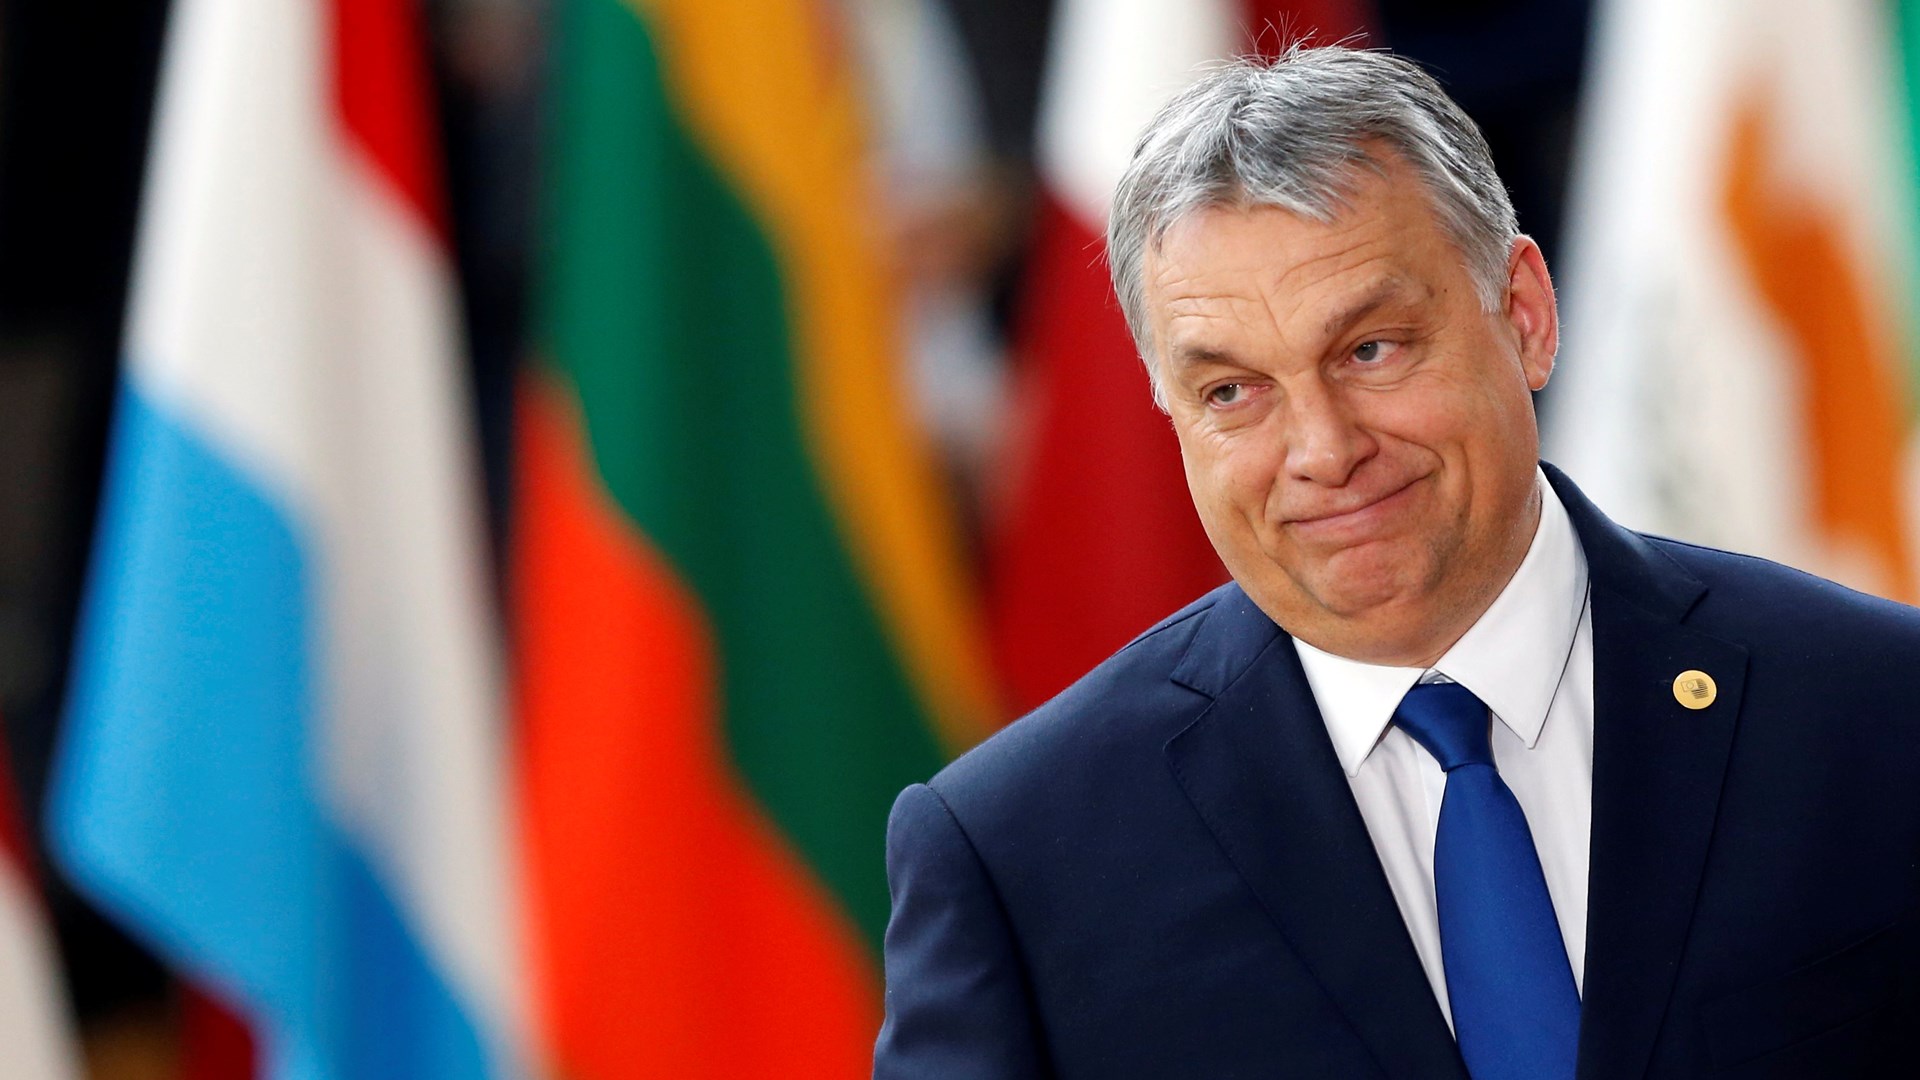 Επιμένει στην αντιμεταναστευτική ρητορική ο Ούγγρος Πρωθυπουργός: Δεν θα παραδώσουμε τη χώρα στους ξένους